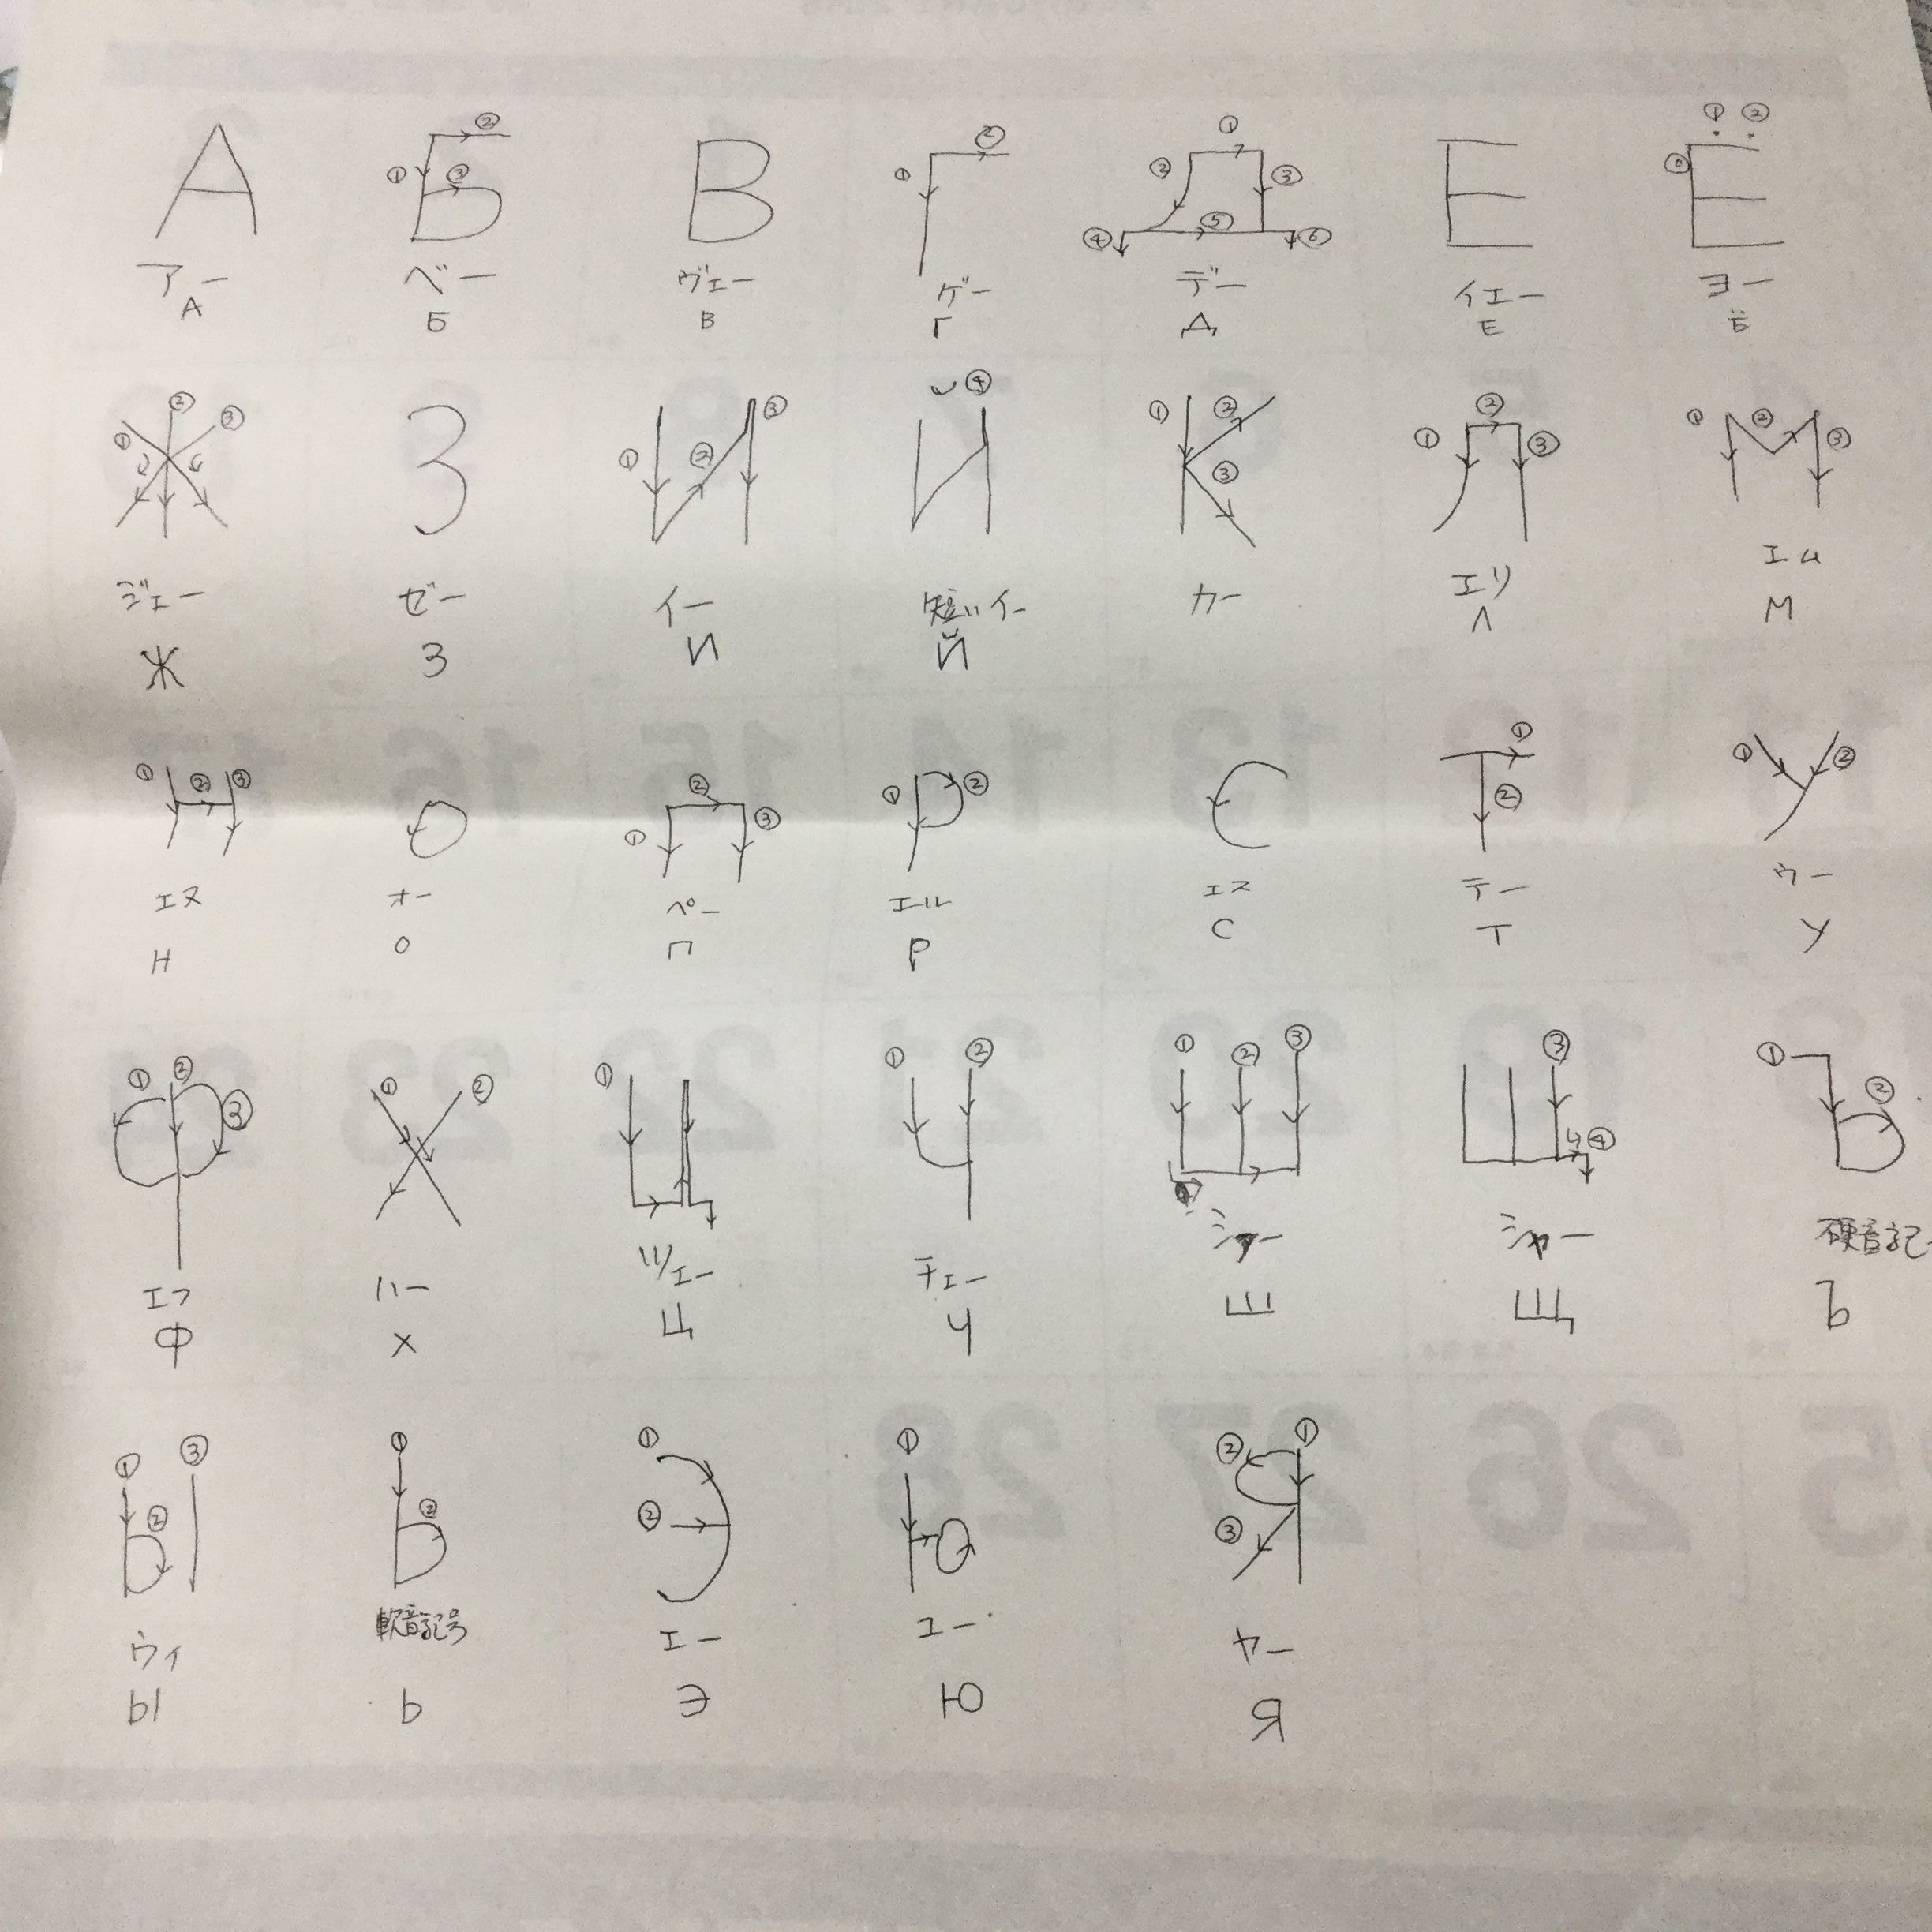 アルファベット ロシア 語 ロシア語・50音対照表